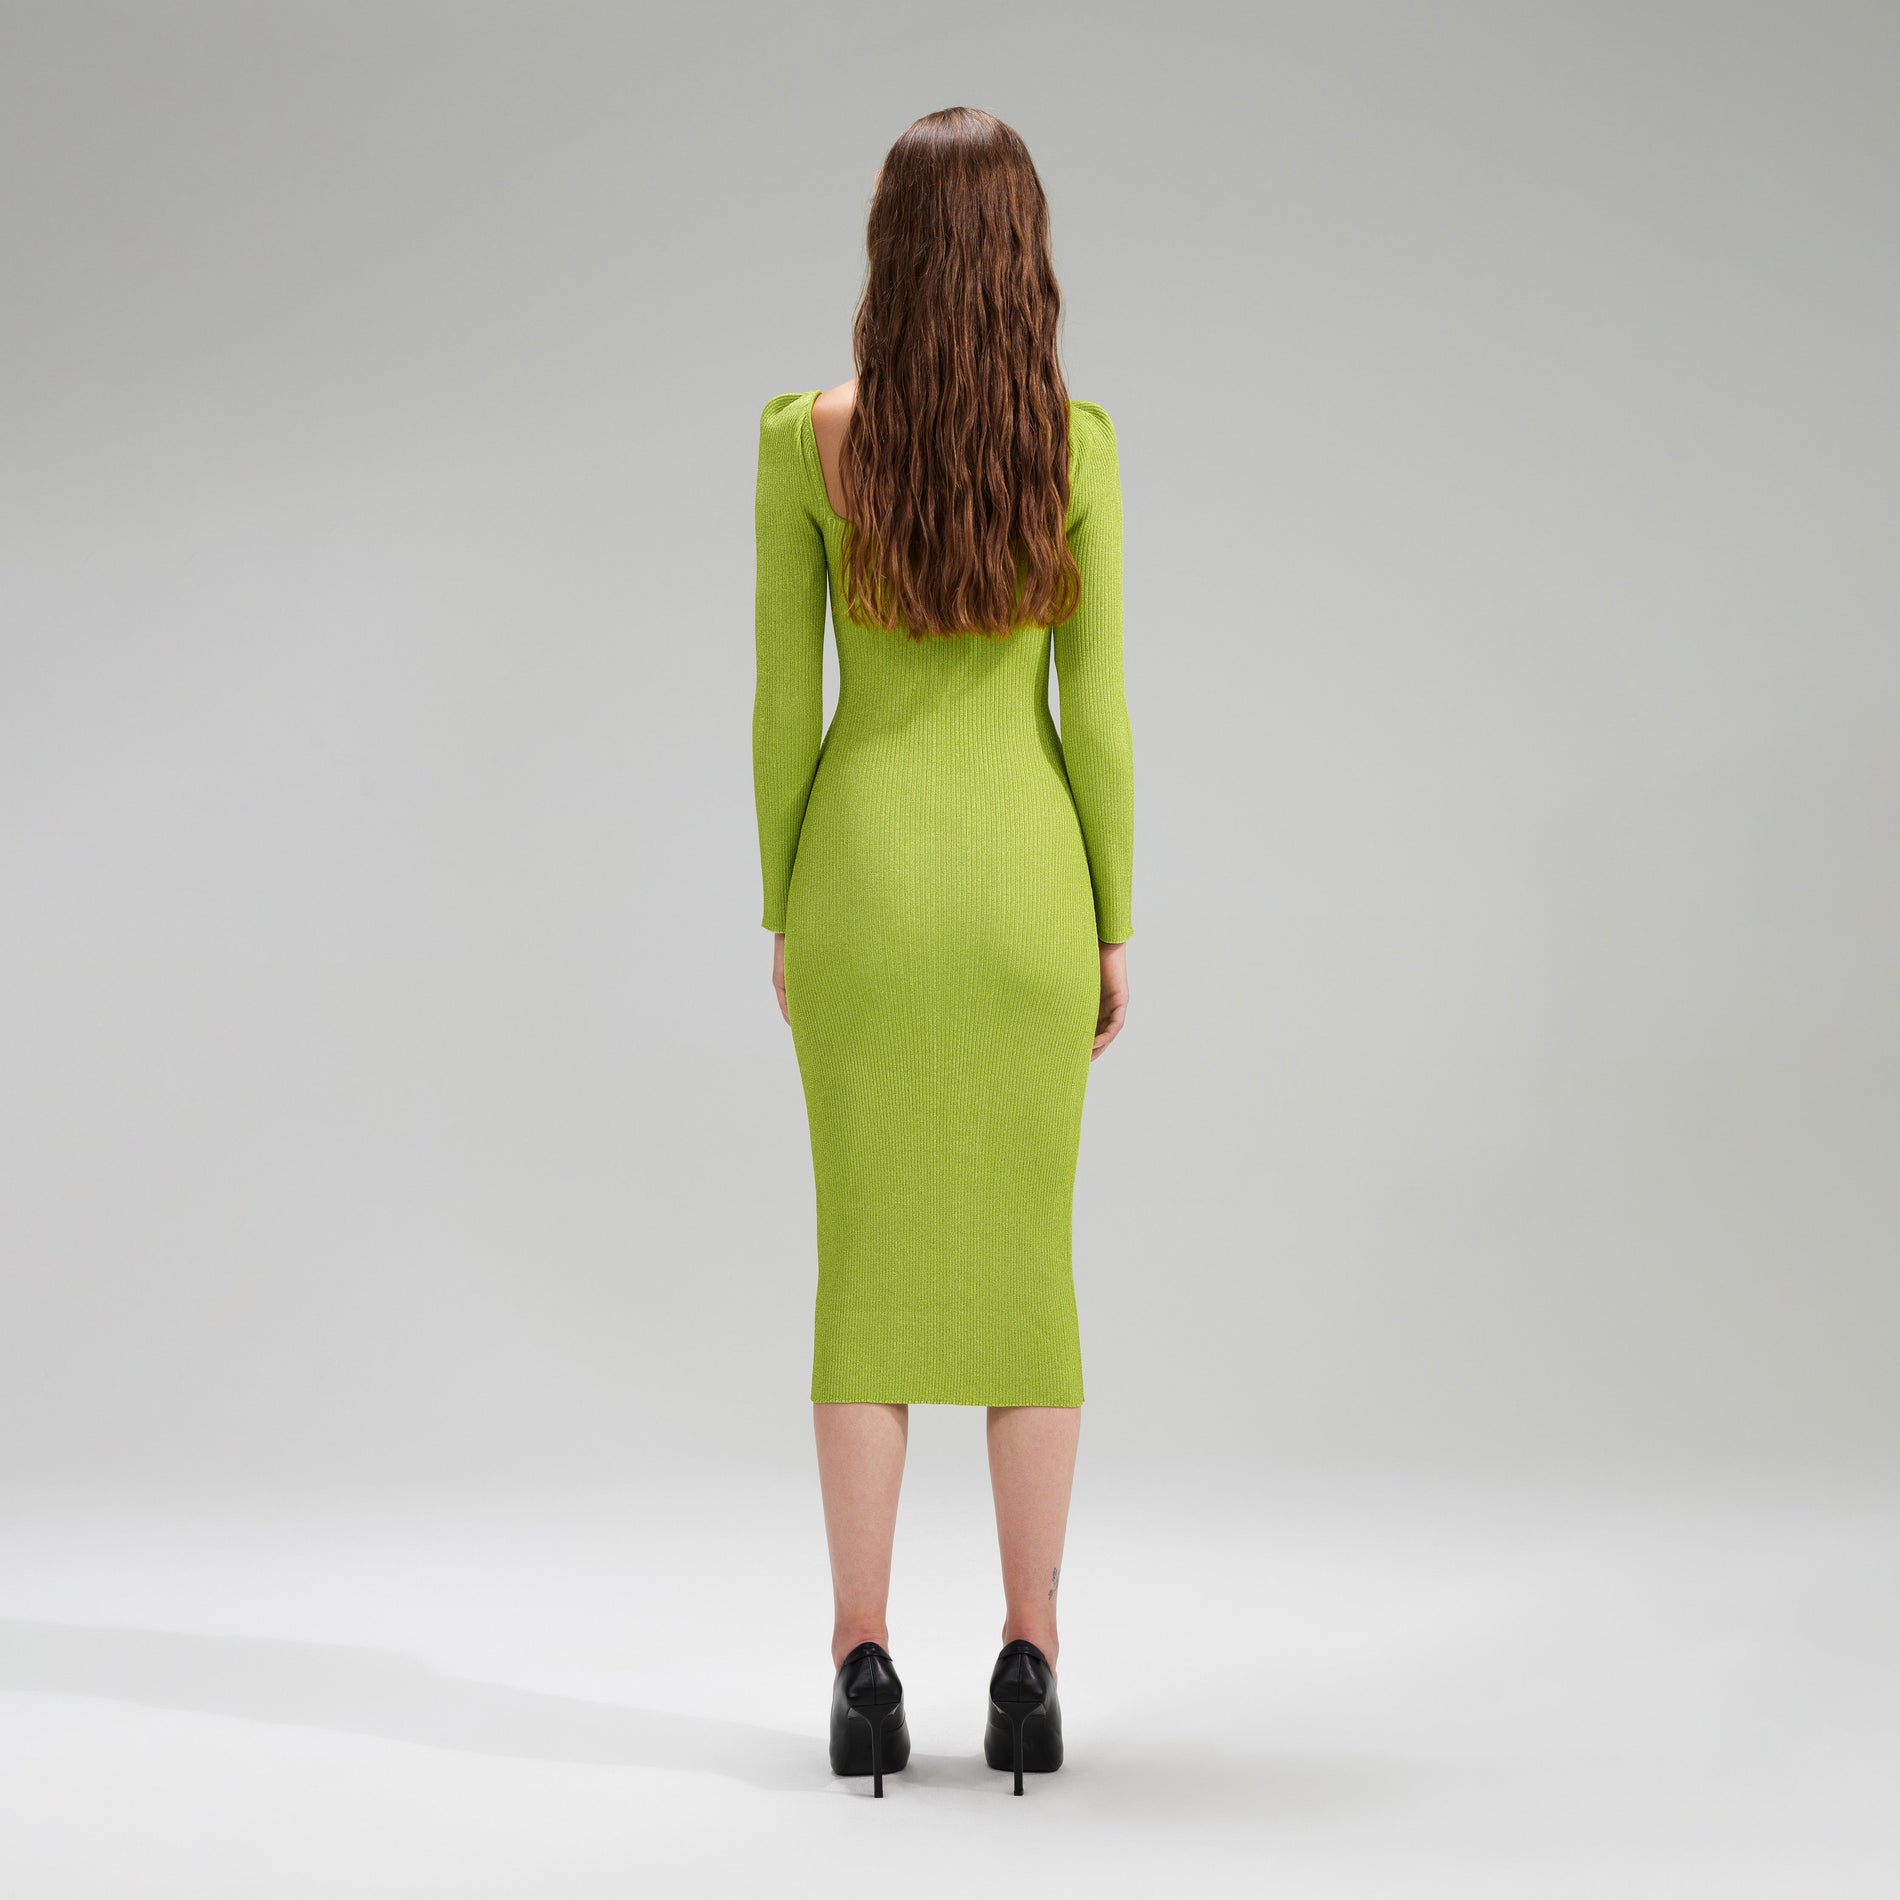 A woman wearing the Lime Green Lurex Knit Midi Dress